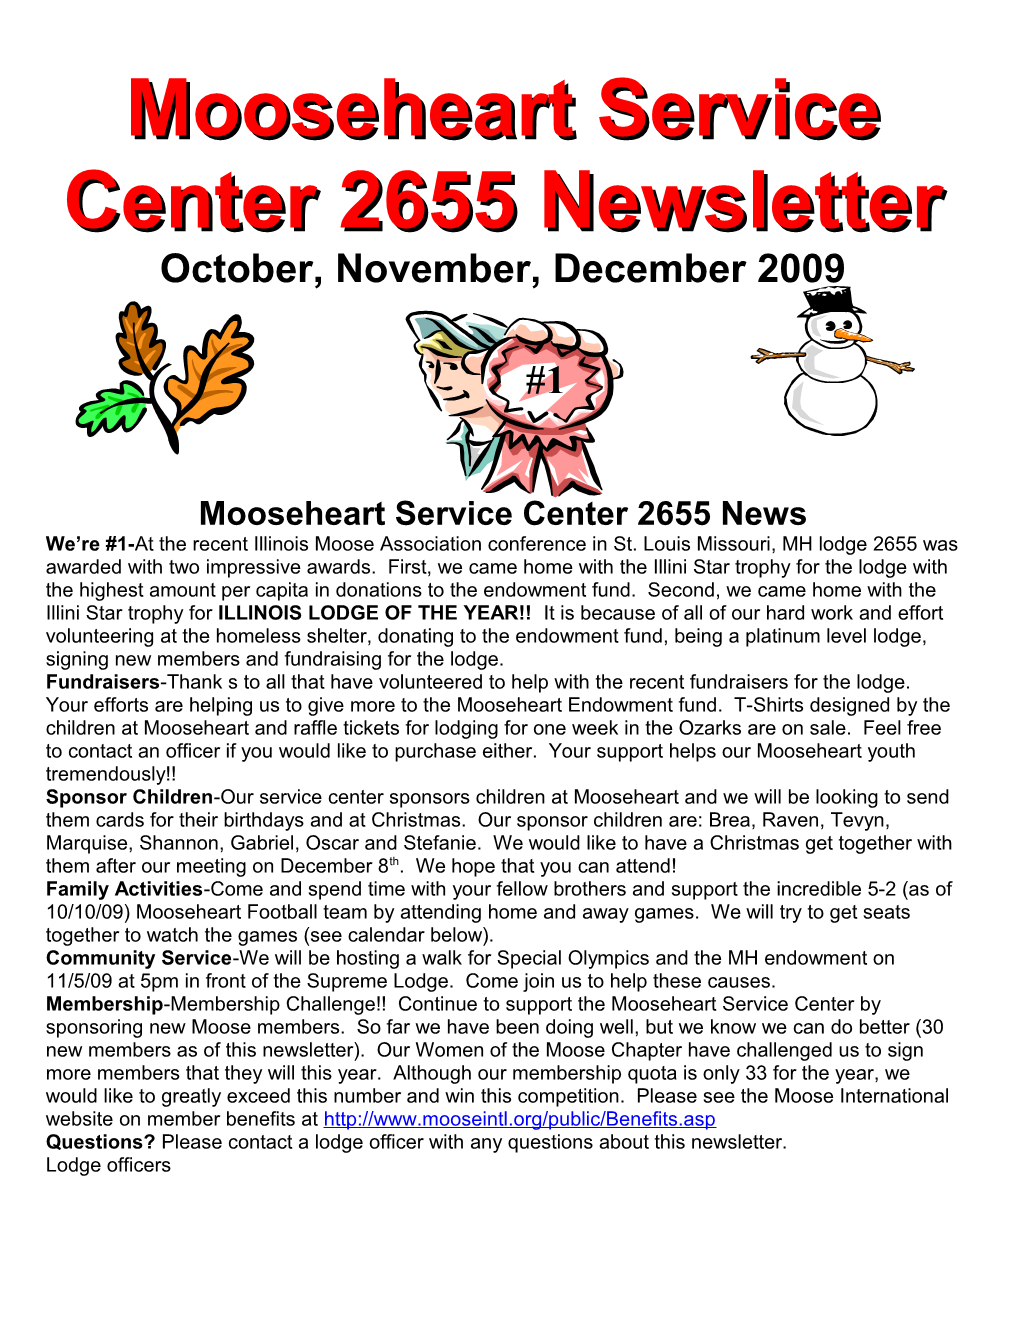 Mooseheart Service Center 2655